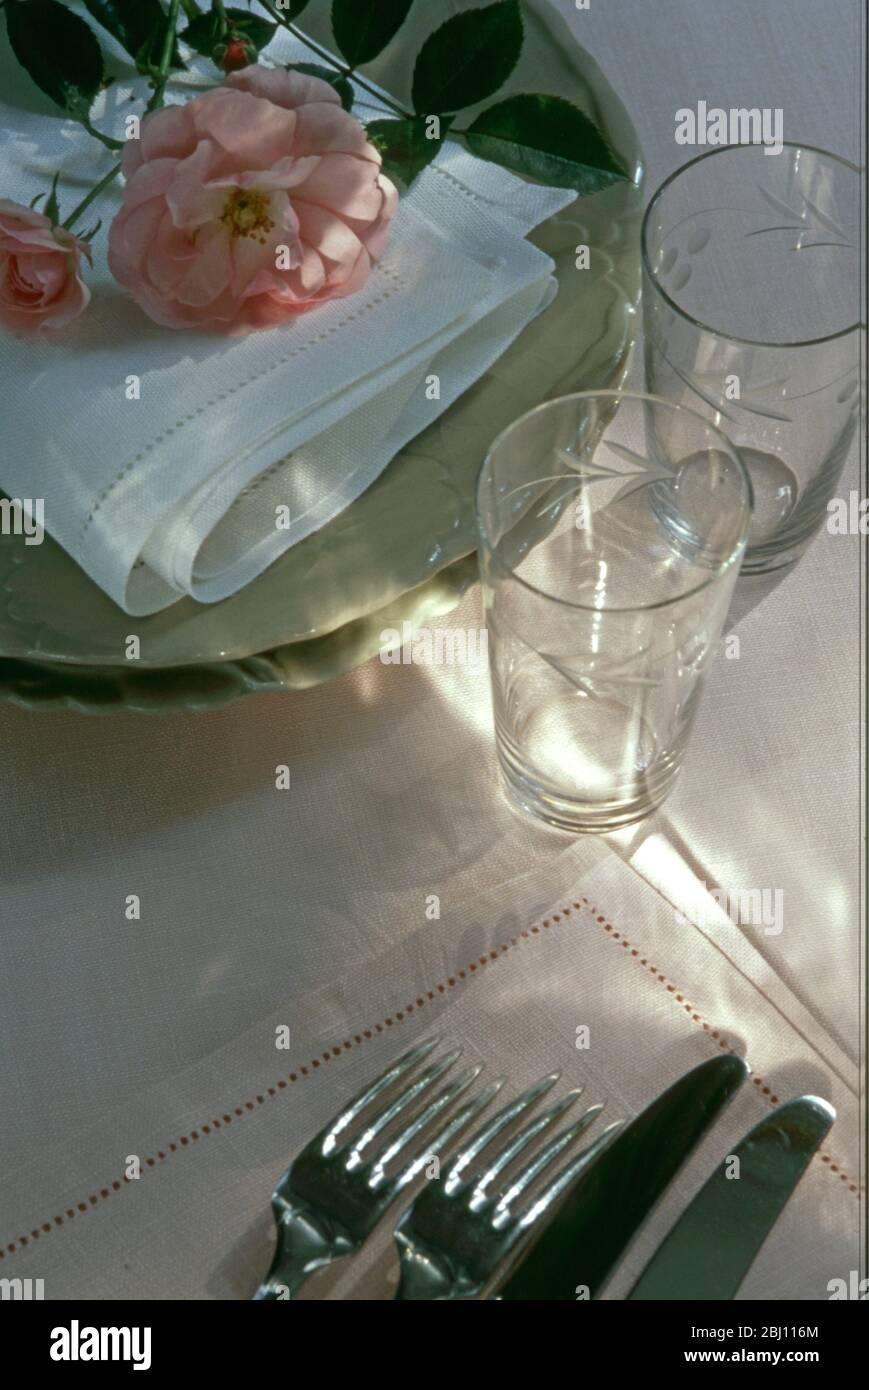 Preparatevi a posare il tavolo per una cena, scegliendo bicchieri piatti di posate e tovaglioli con rosa appena scelta - Foto Stock